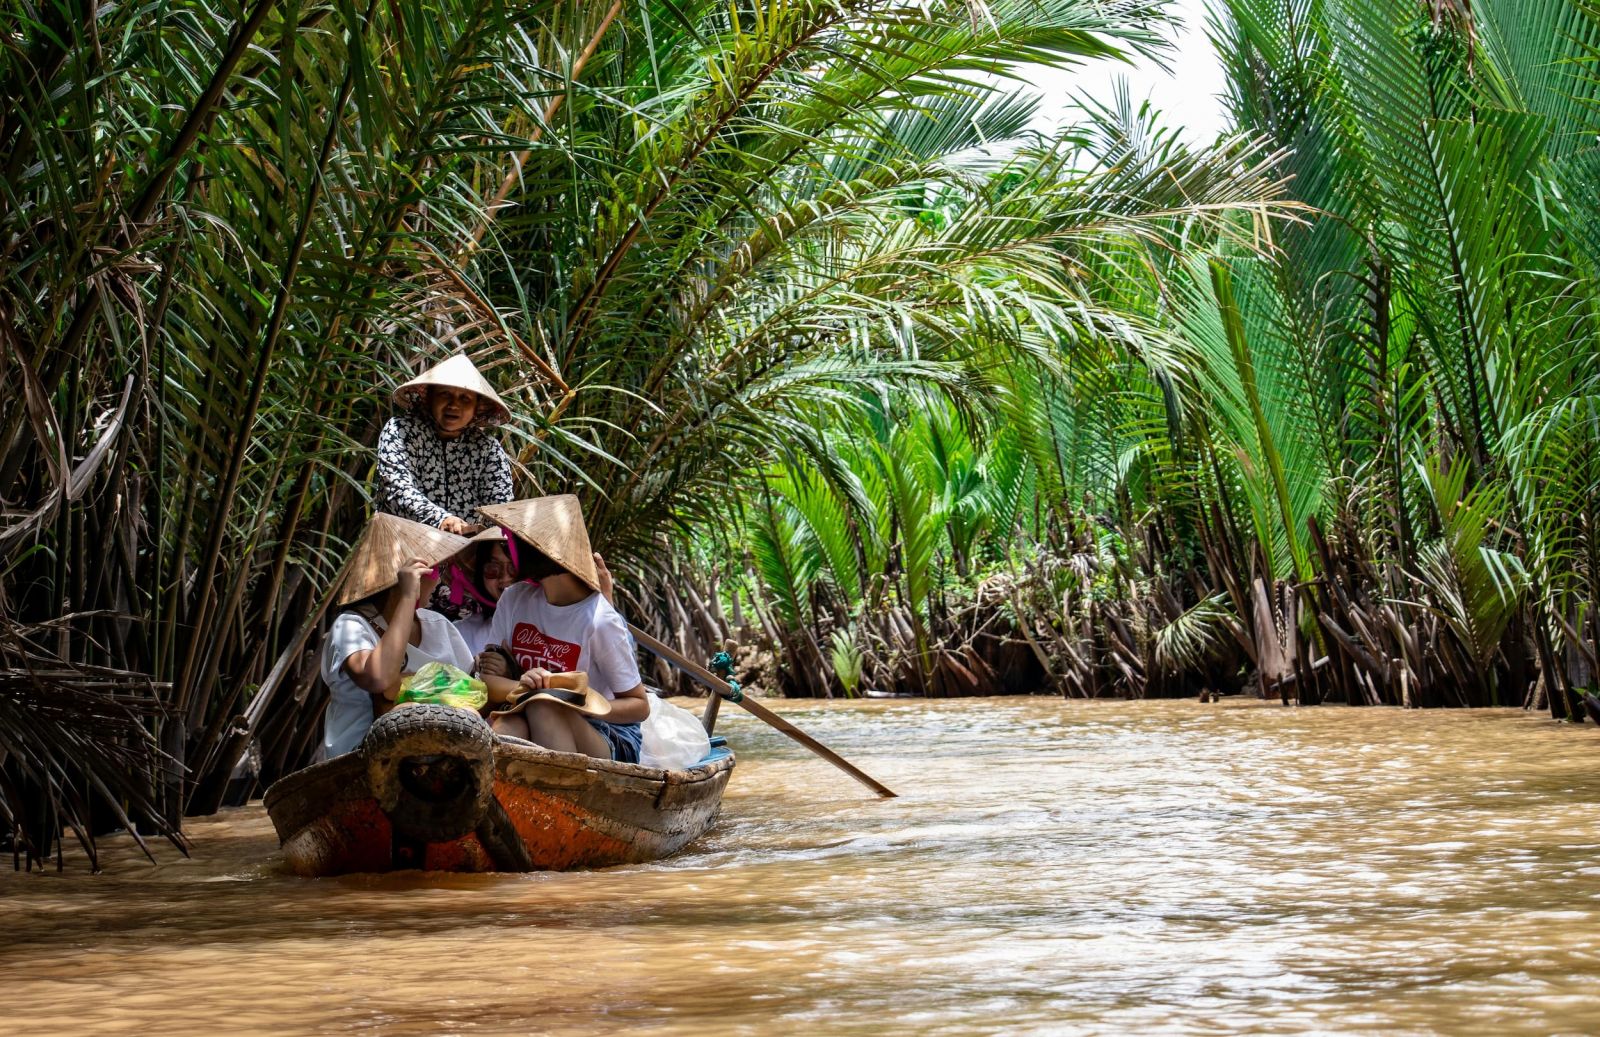 Du khách khám phá Đồng bằng sông Cửu Long bằng thuyền (Hình: Pexels).